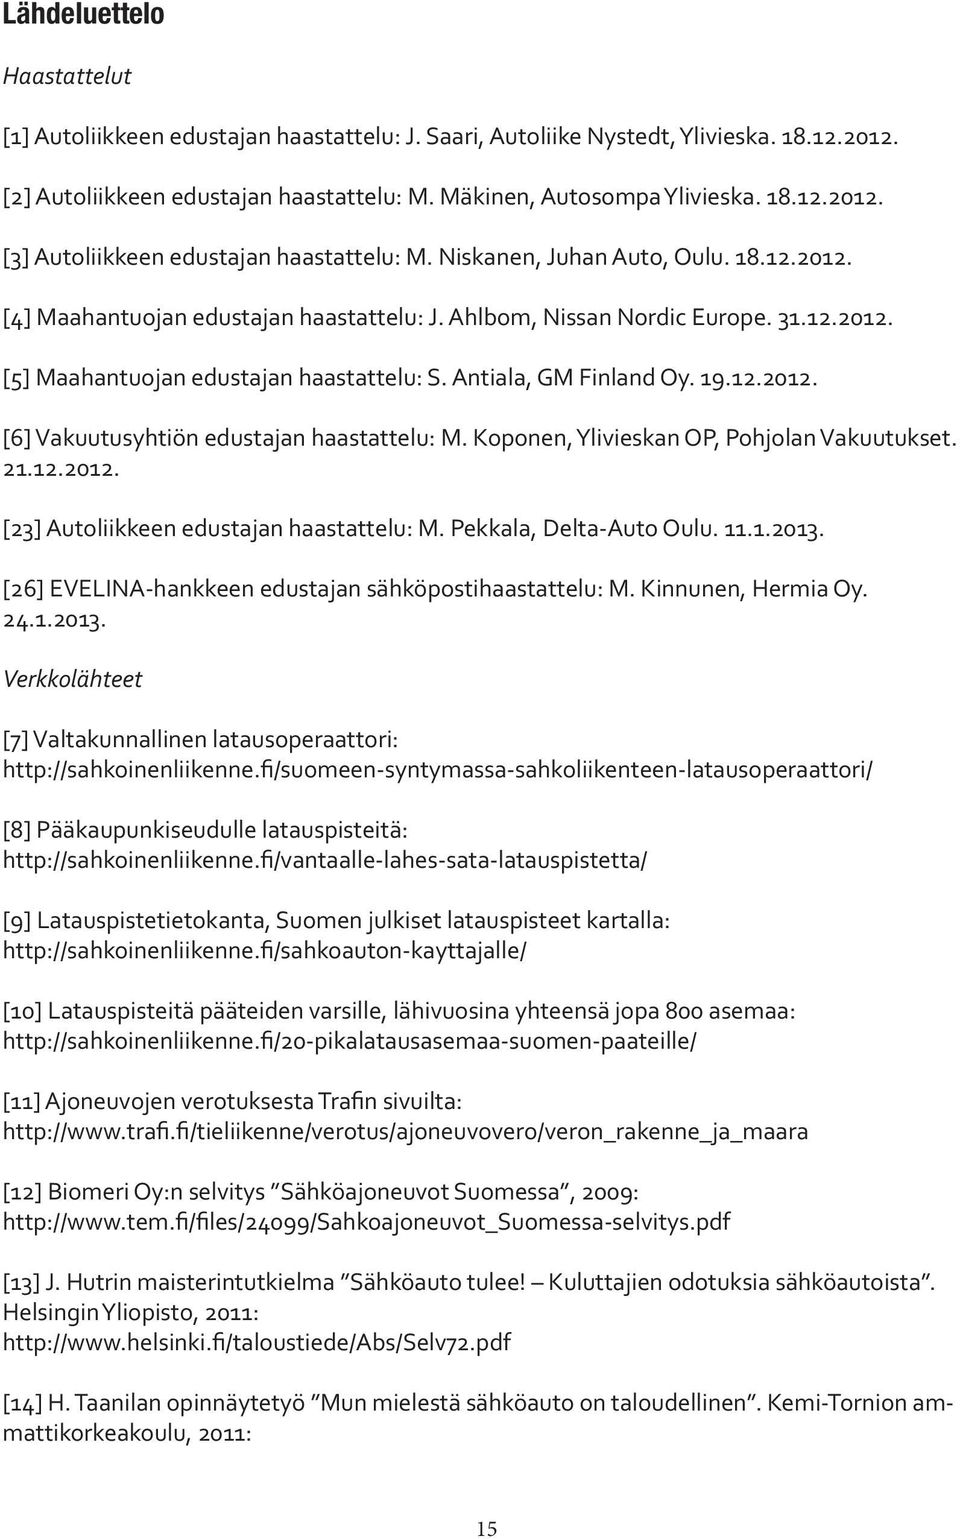 Koponen, Ylivieskan OP, Pohjolan Vakuutukset. 21.12.2012. [23] Autoliikkeen edustajan haastattelu: M. Pekkala, Delta-Auto Oulu. 11.1.2013. [26] EVELINA-hankkeen edustajan sähköpostihaastattelu: M.